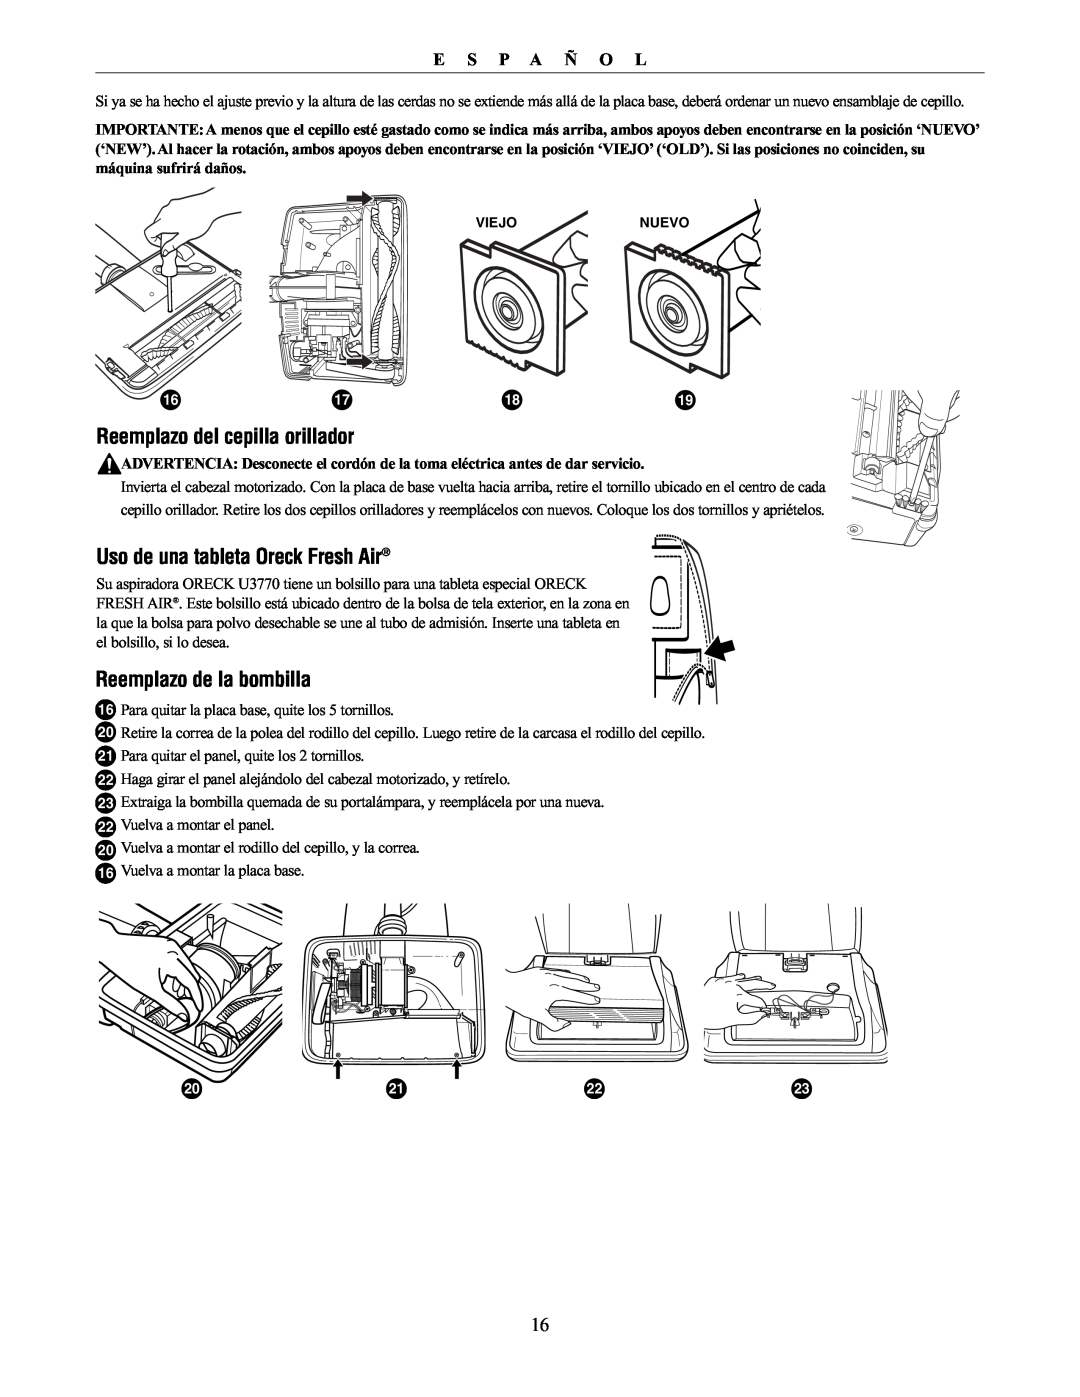 Oreck 76011-01REVC manual Reemplazo del cepilla orillador, Uso de una tableta Oreck Fresh Air, Reemplazo de la bombilla 